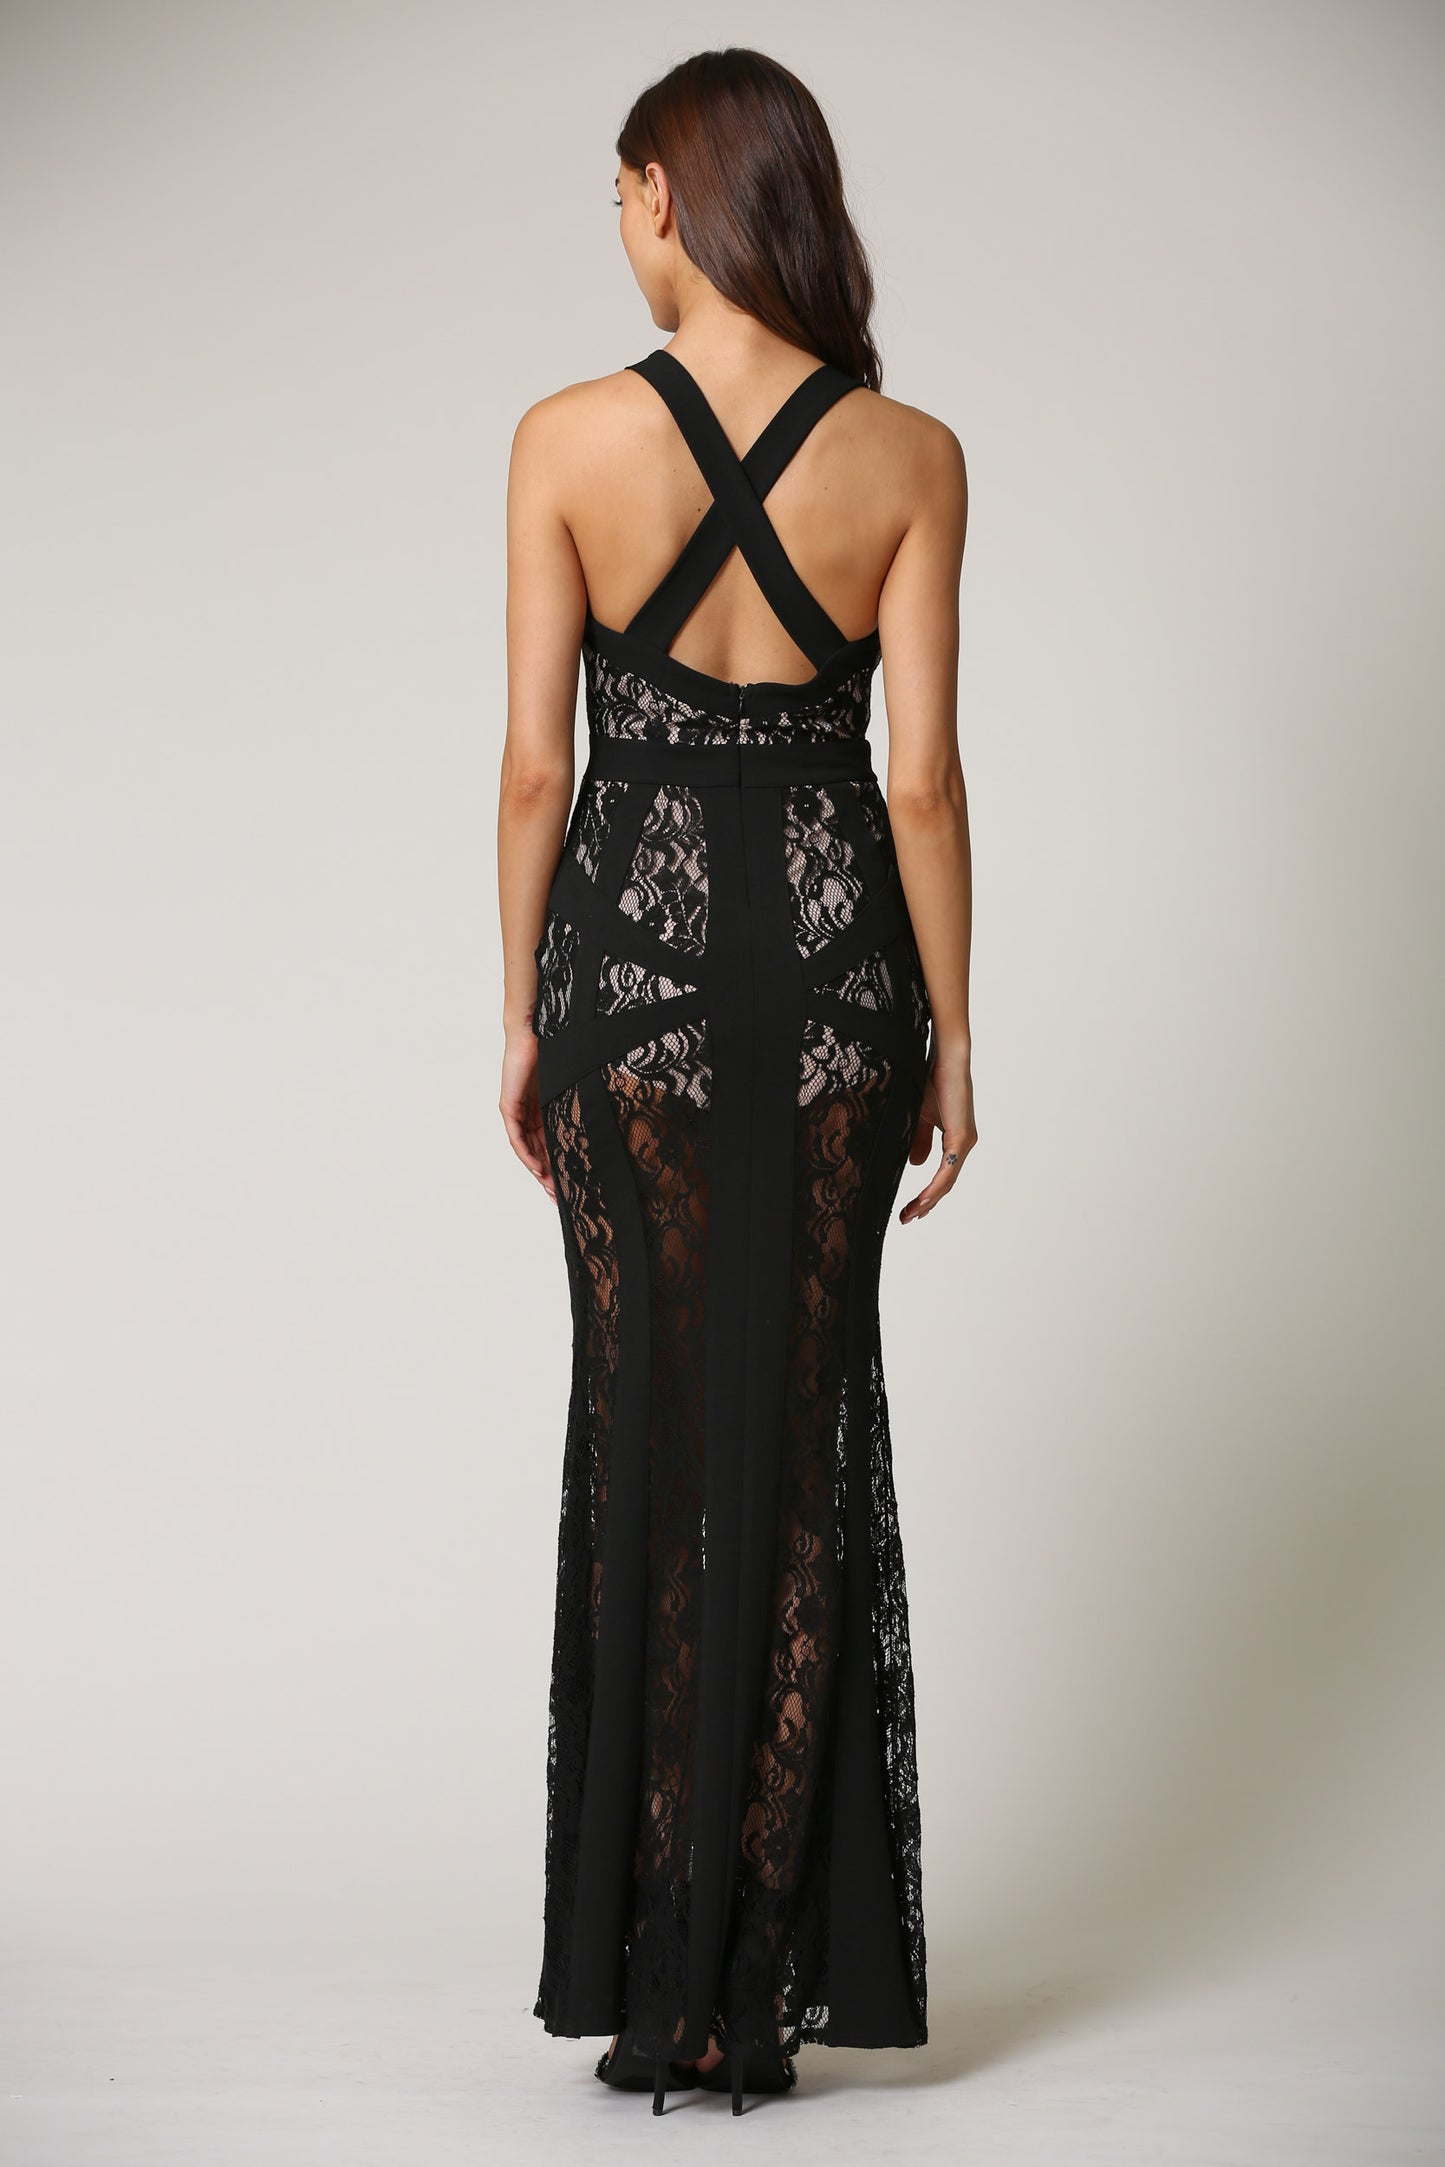 Elegant Black Nude Floral Lace V-Neck Maxi Dress with Middle Slit